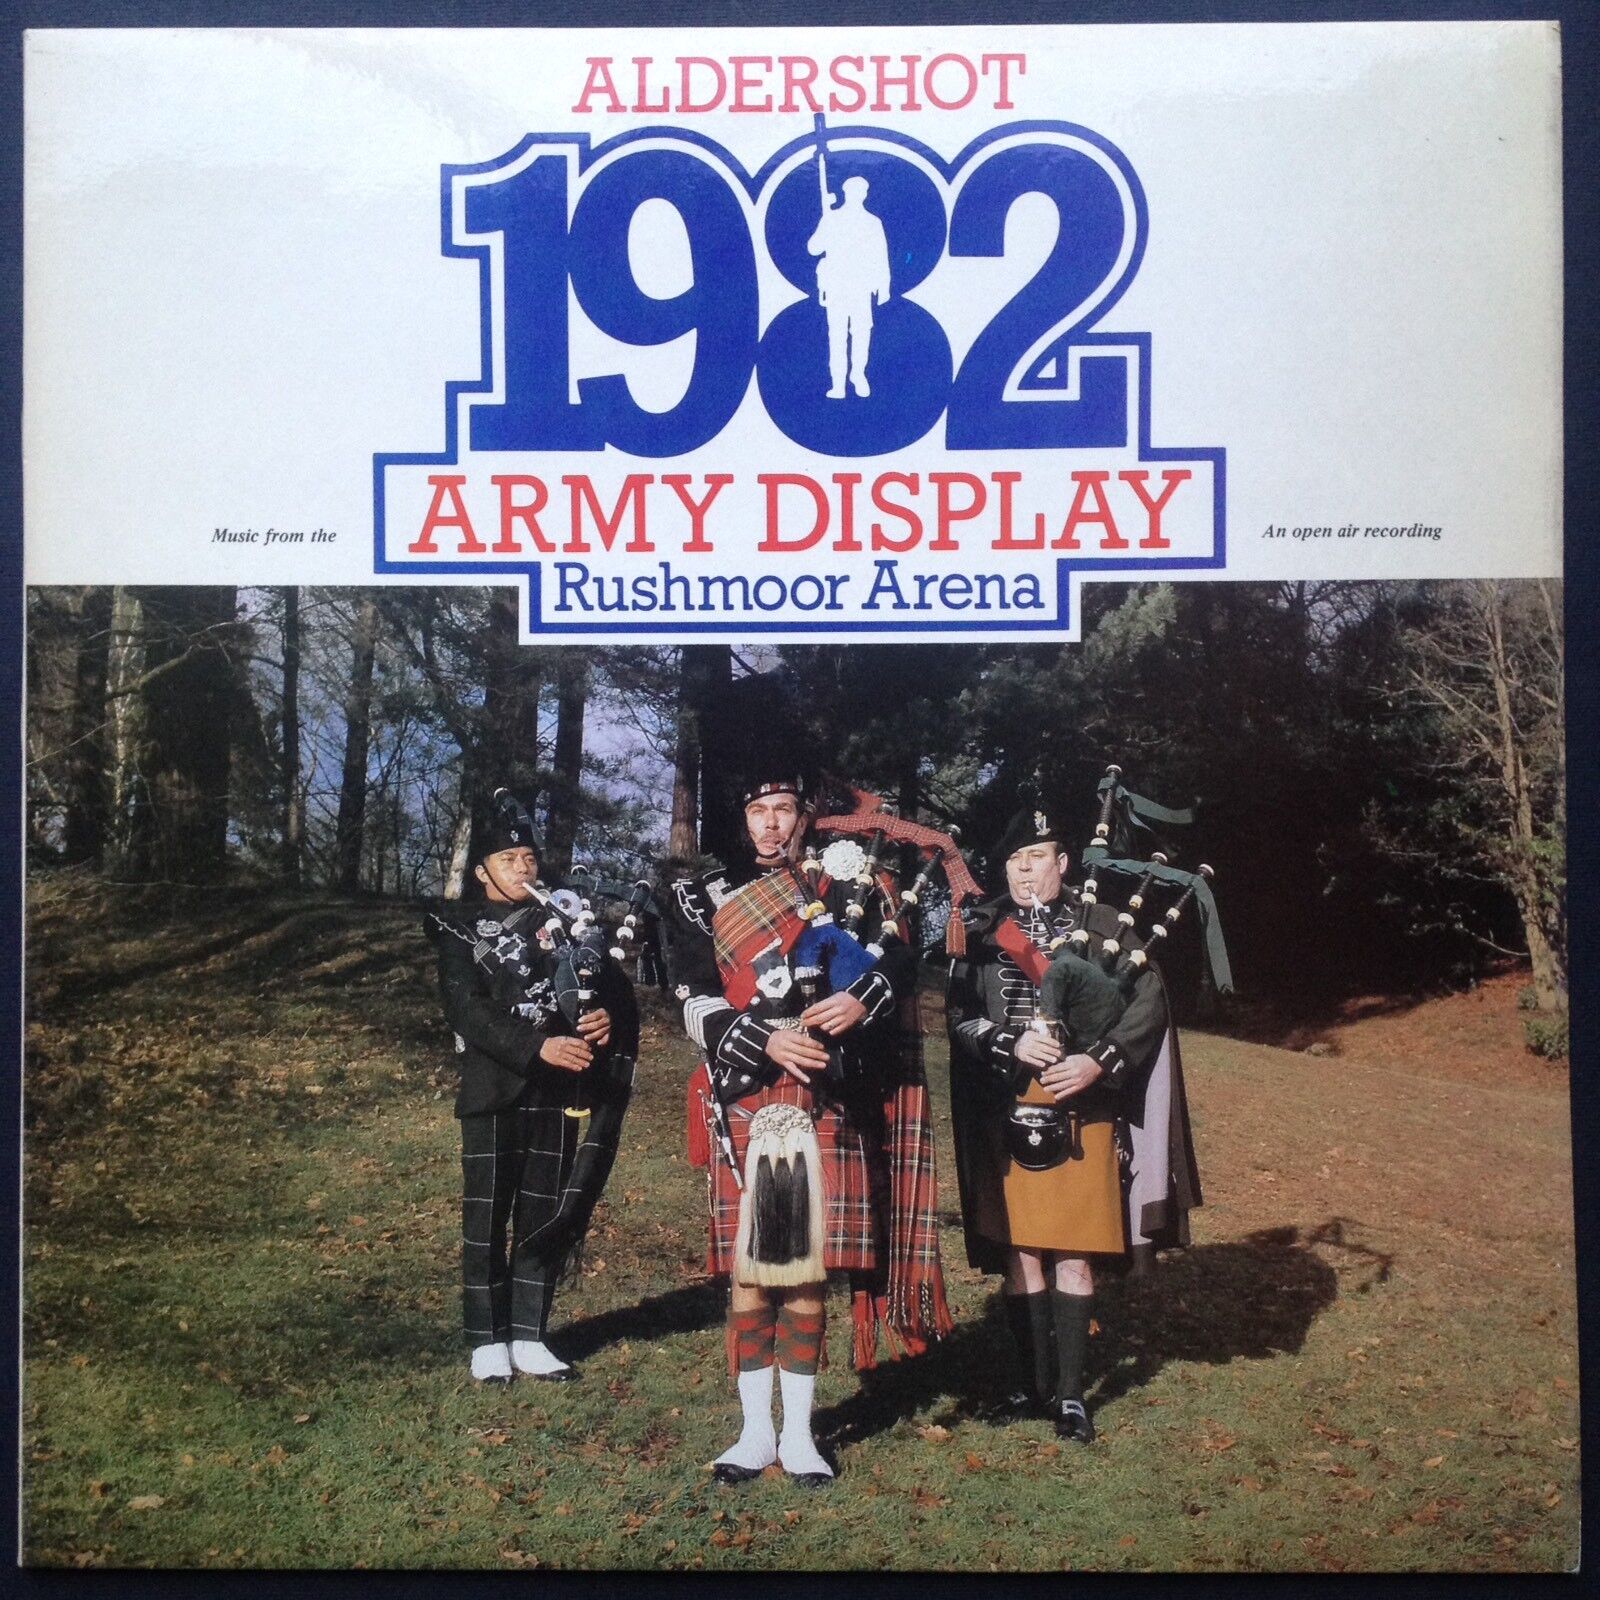 ALDERSHOT ARMY DISPLAY 1982 [Rushmoor Arena] Military LP Royal Medical Corps UK